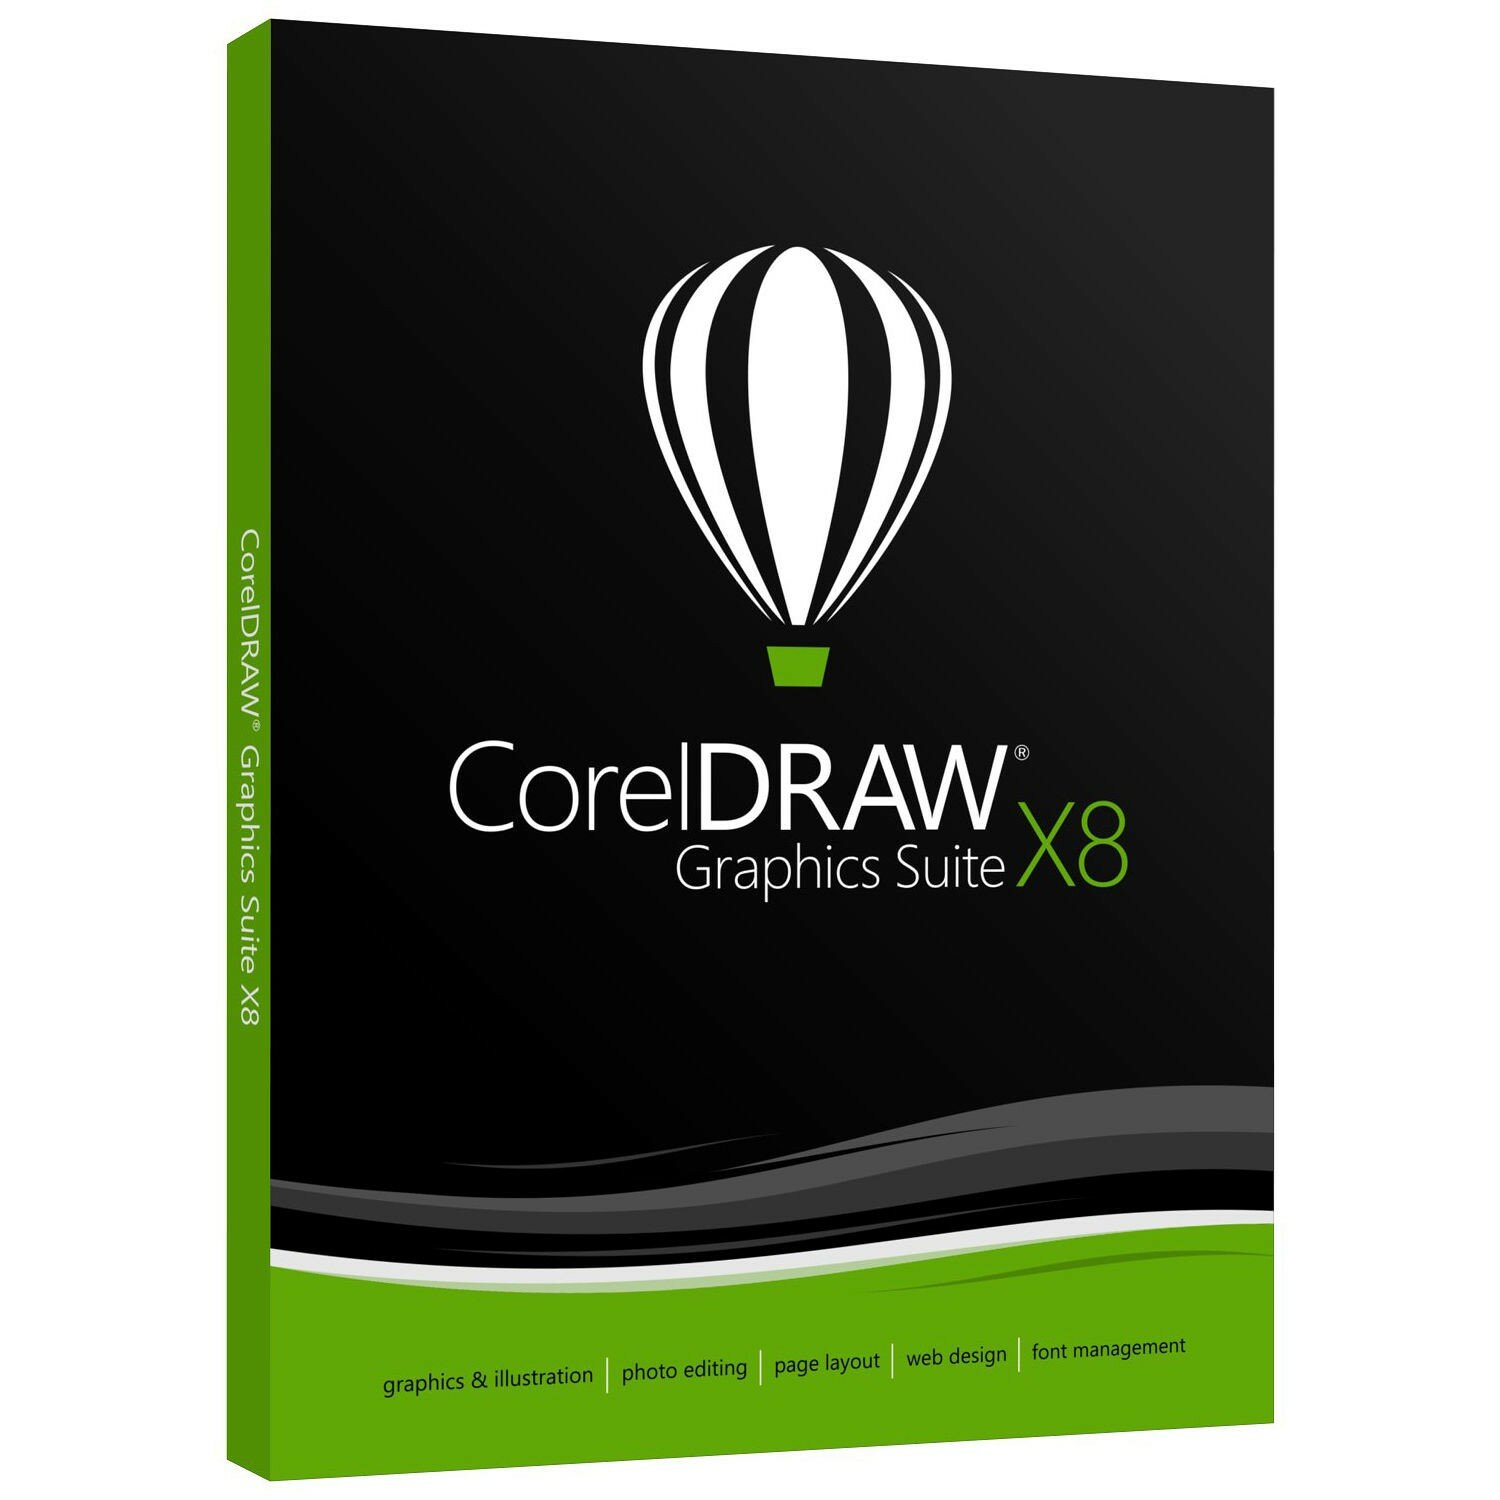 CorelDRAW Graphics Suite X8 EN